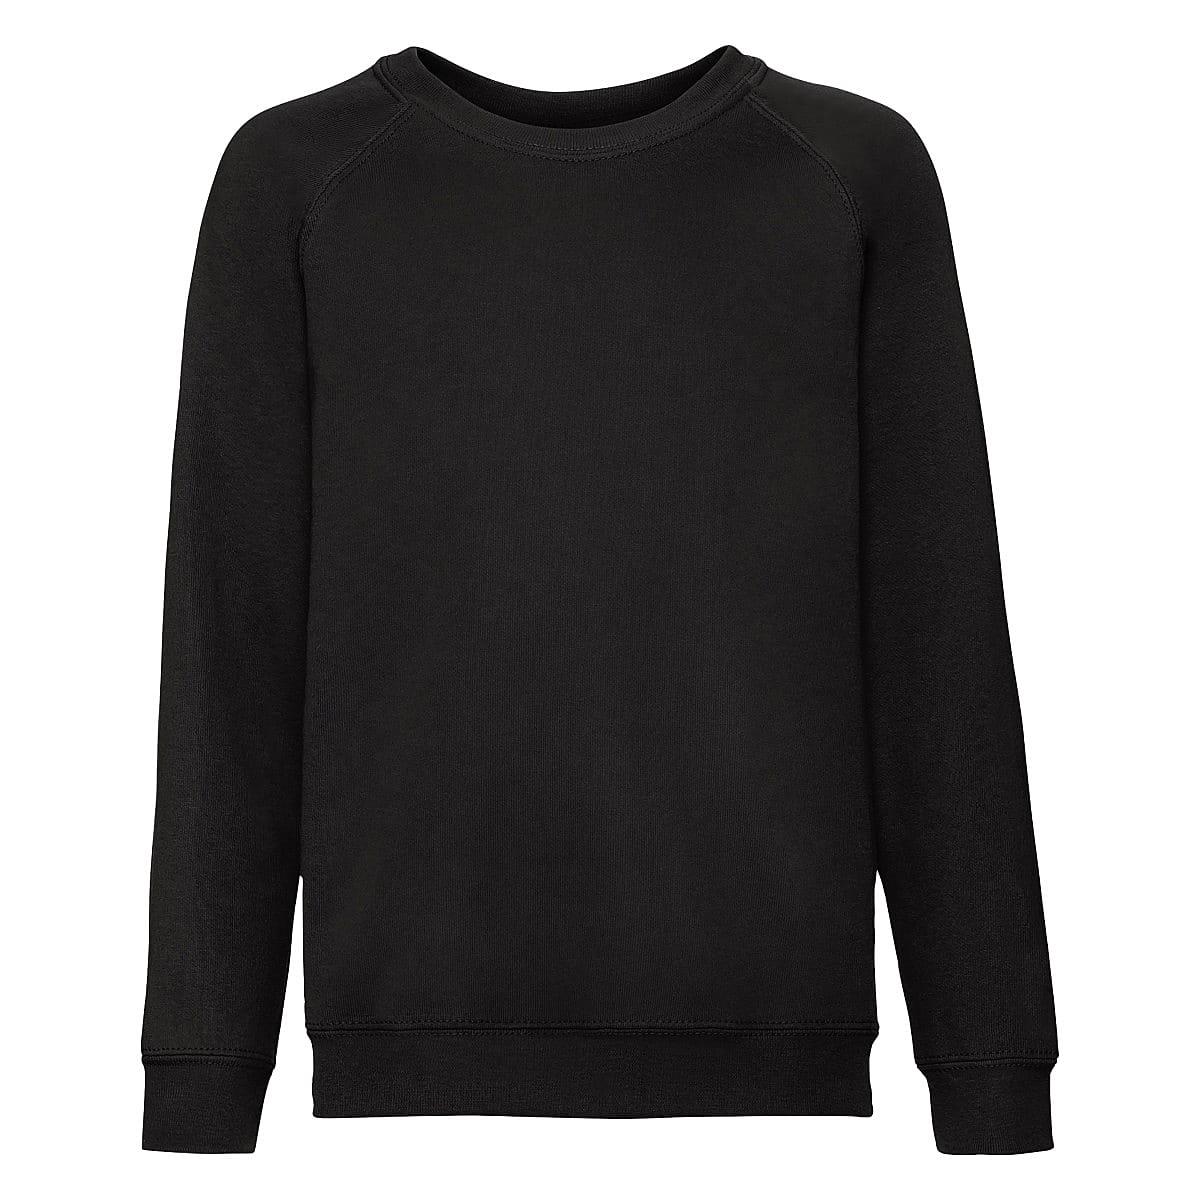 Fruit Of The Loom Childrens Raglan Sleeve Sweatshirt in Black (Product Code: 62039)